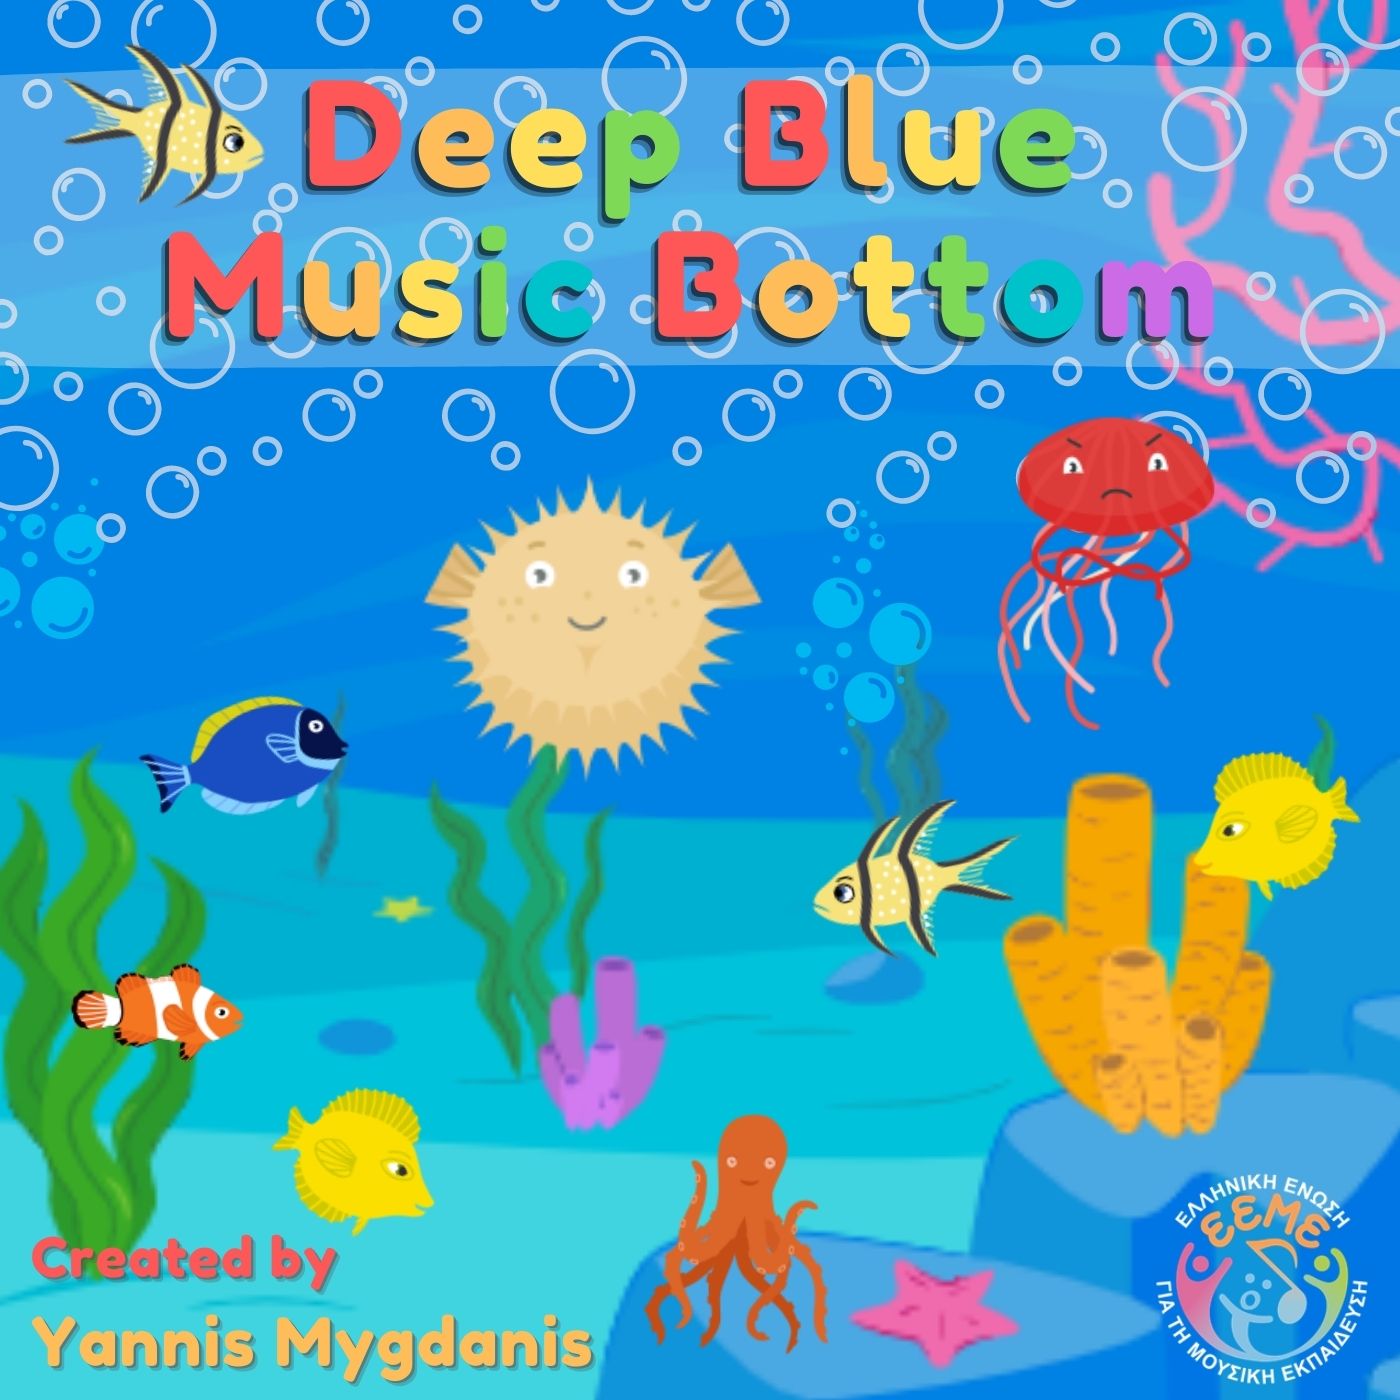 Deep Blue Music Bottom